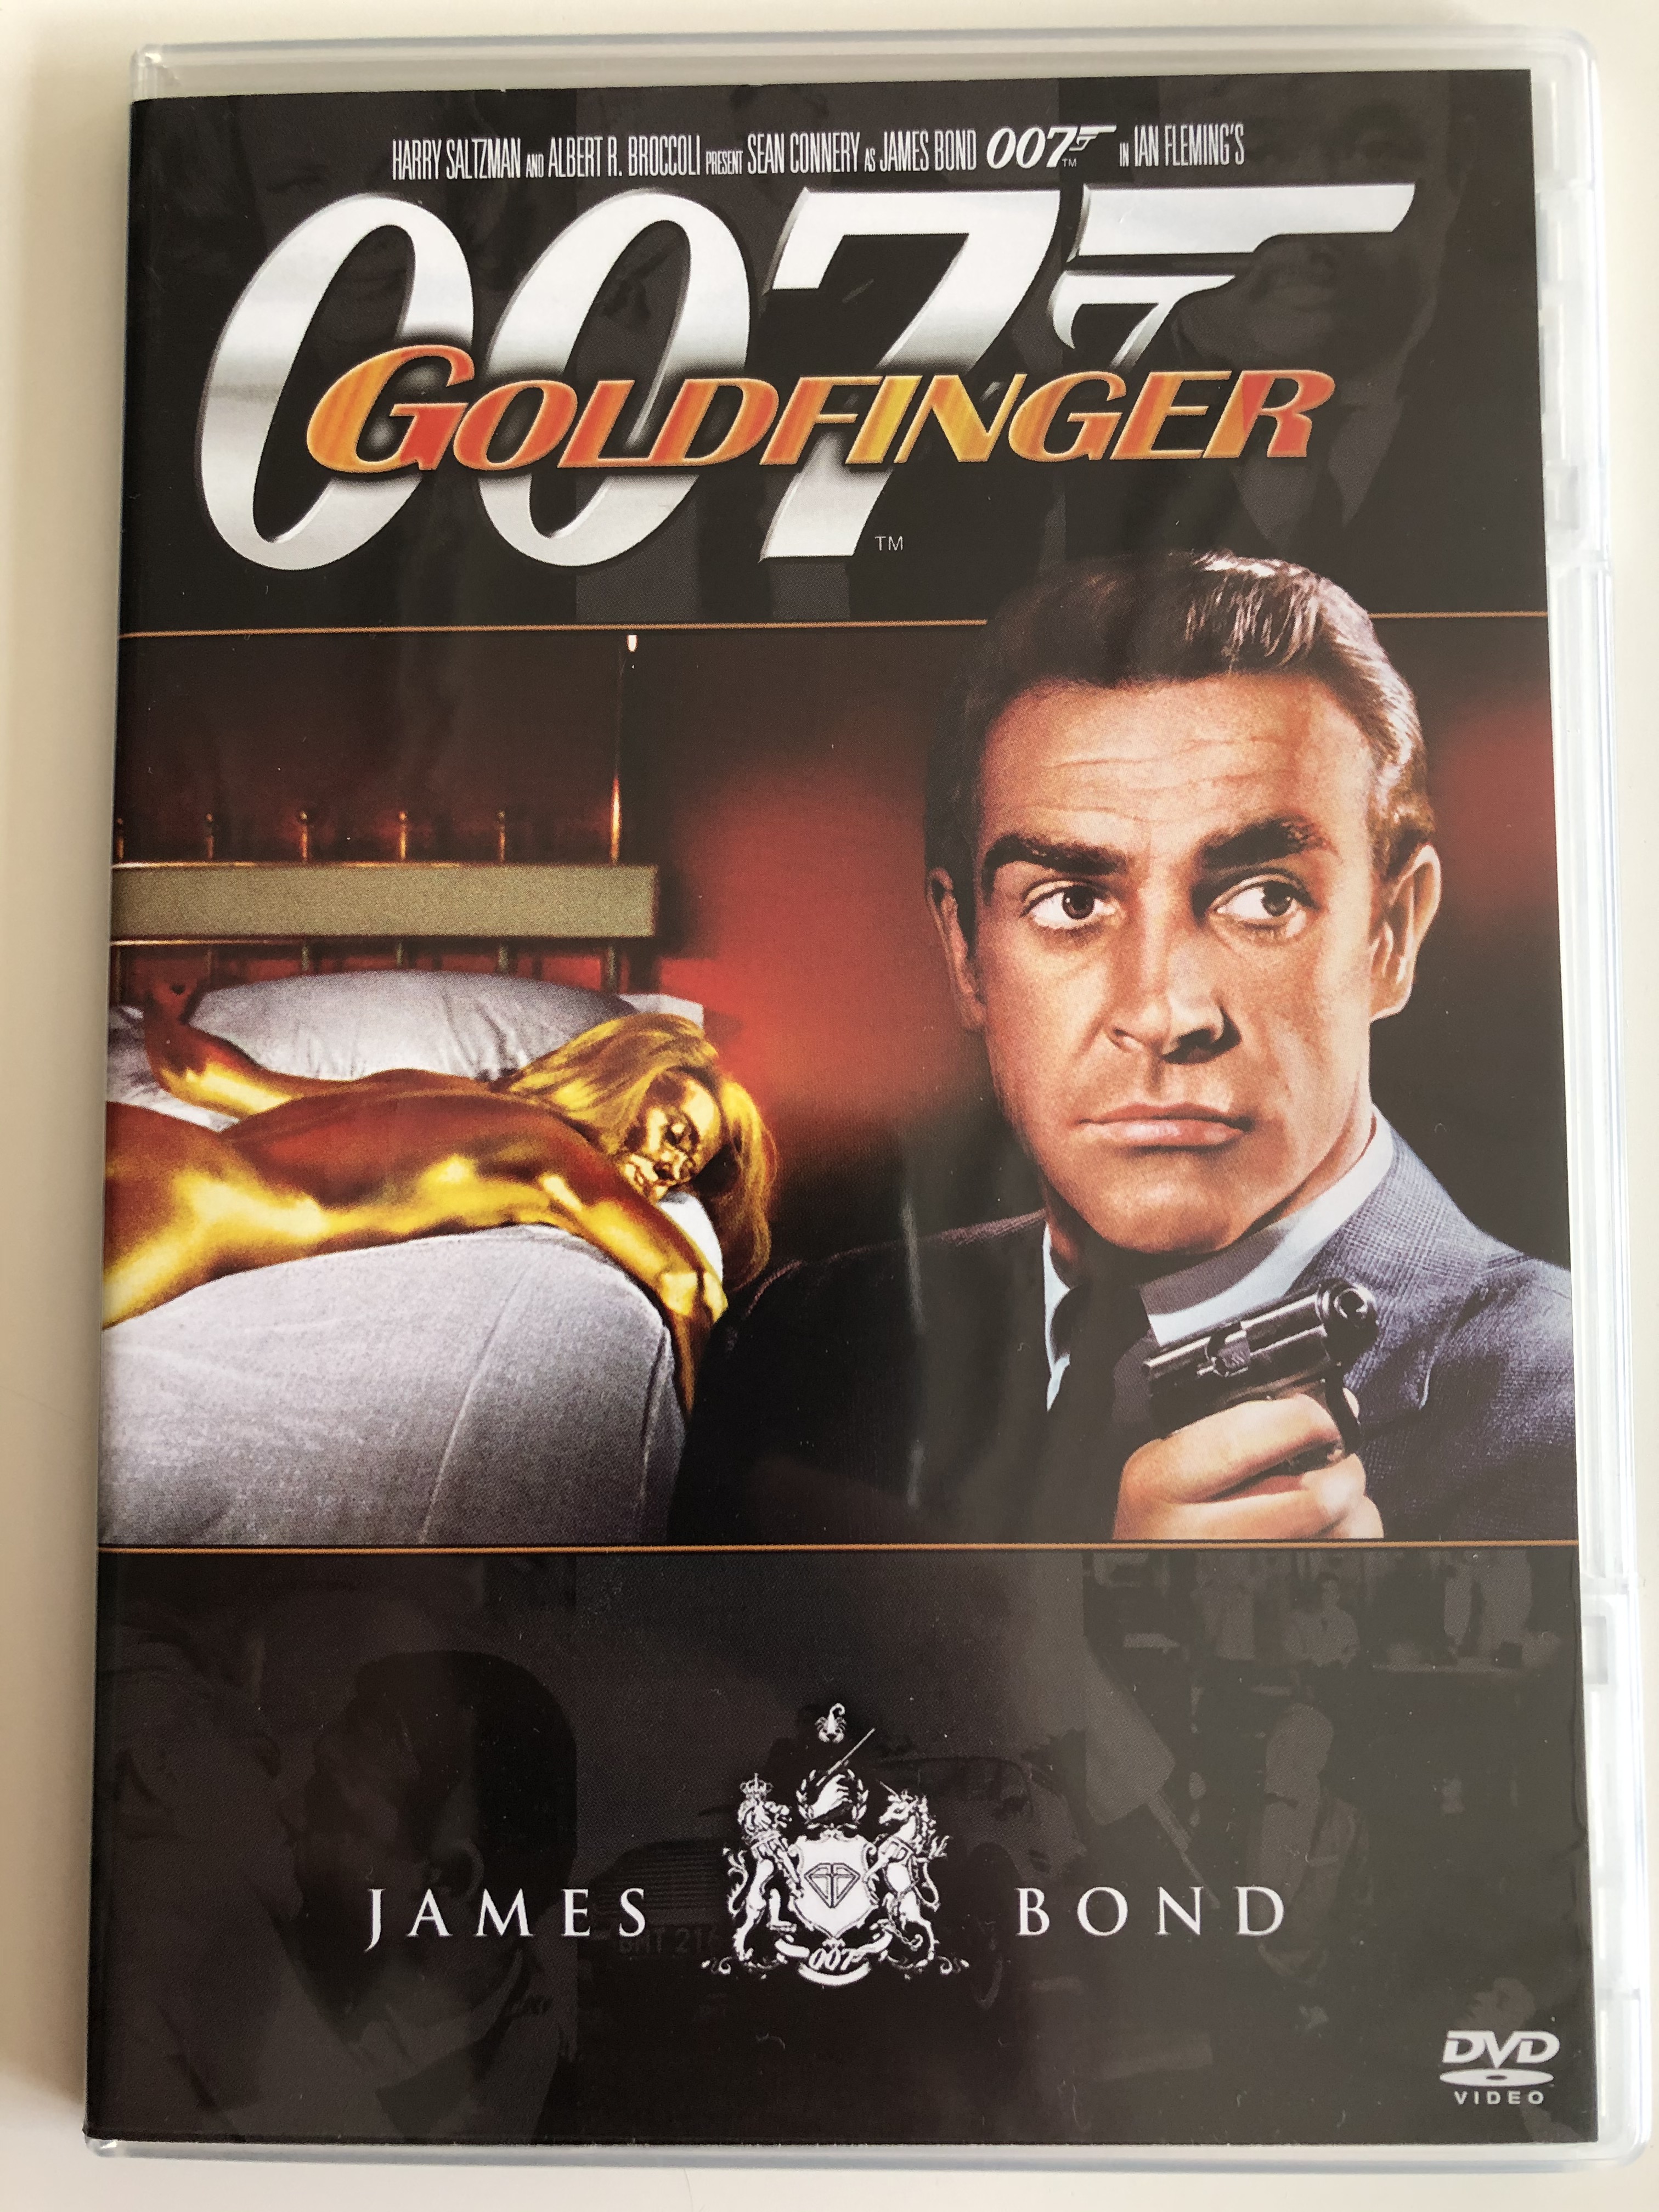 James Bond 007 - Goldfinger DVD 1964 Goldfinger  1.JPG